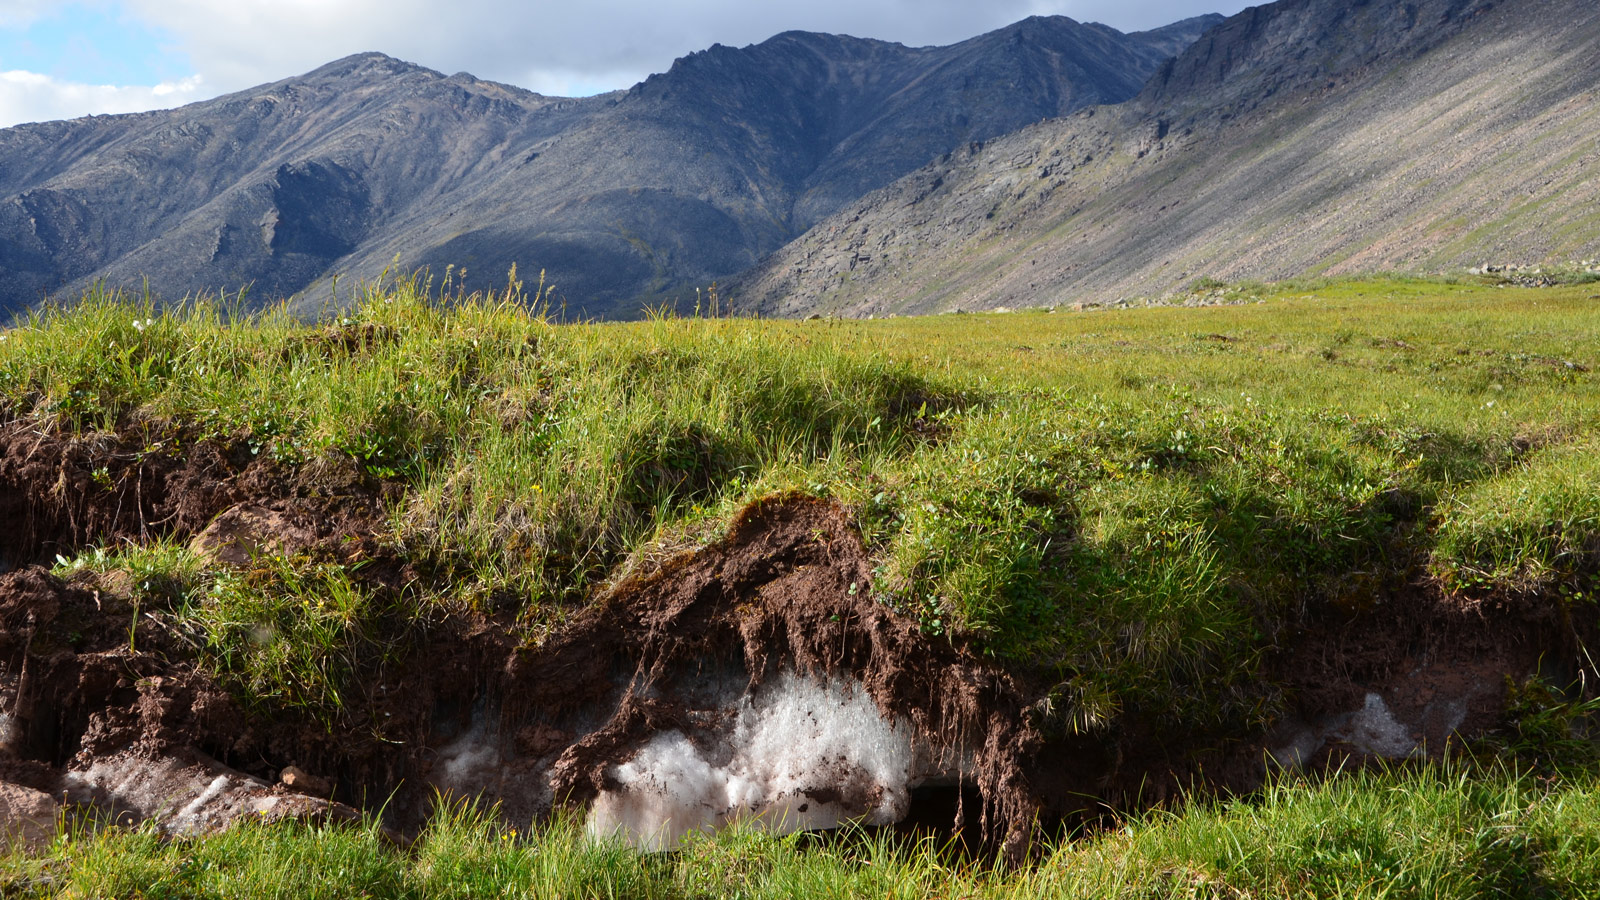 Permafrost in soil